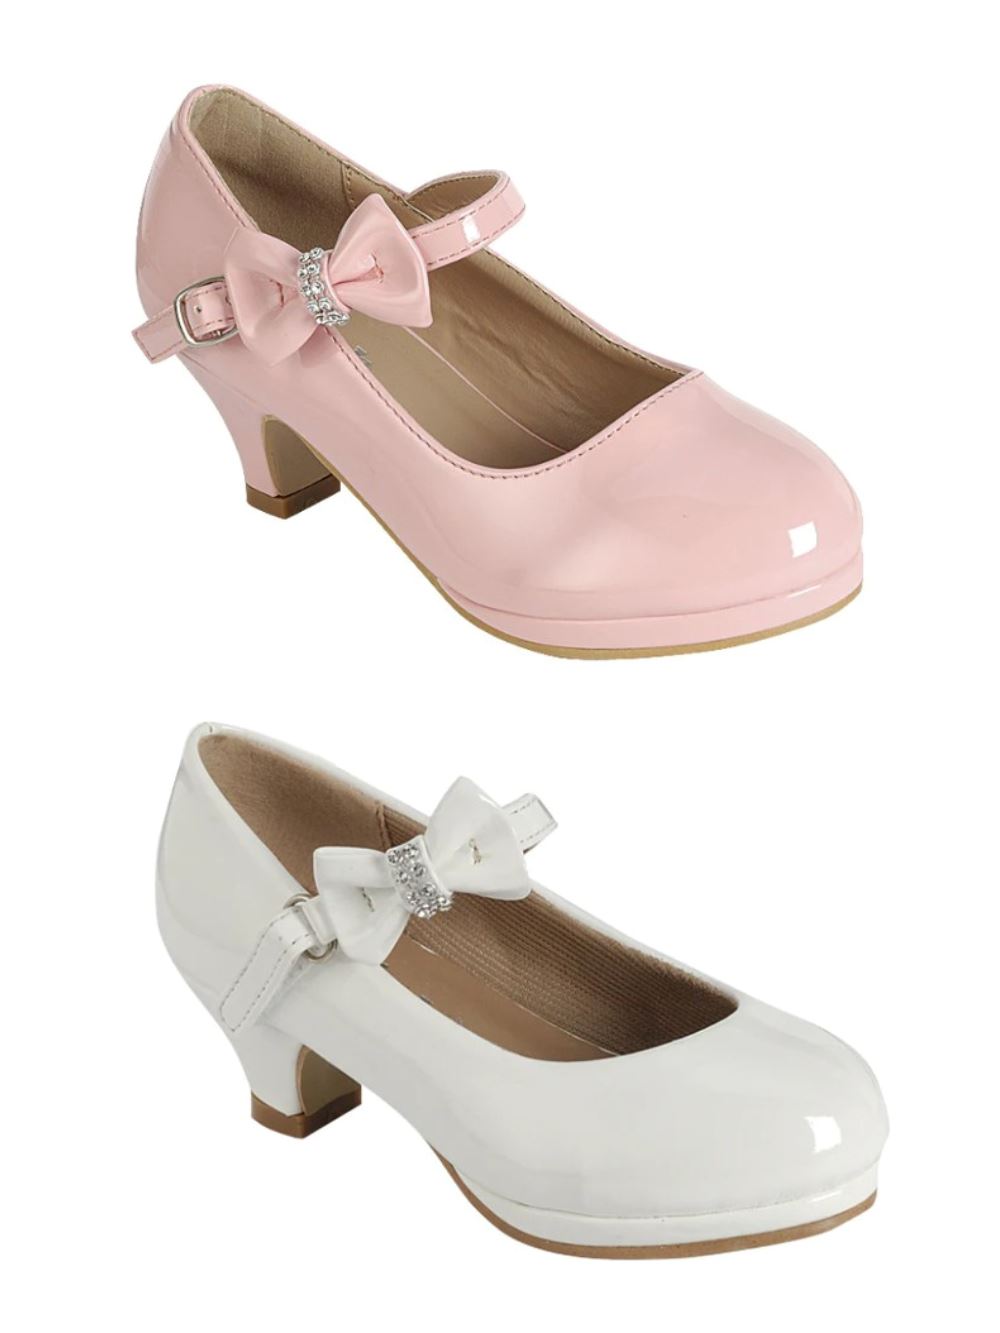 Dr. Martens 8065 WHITE Mary Jane Shoes Size 8, value India | Ubuy